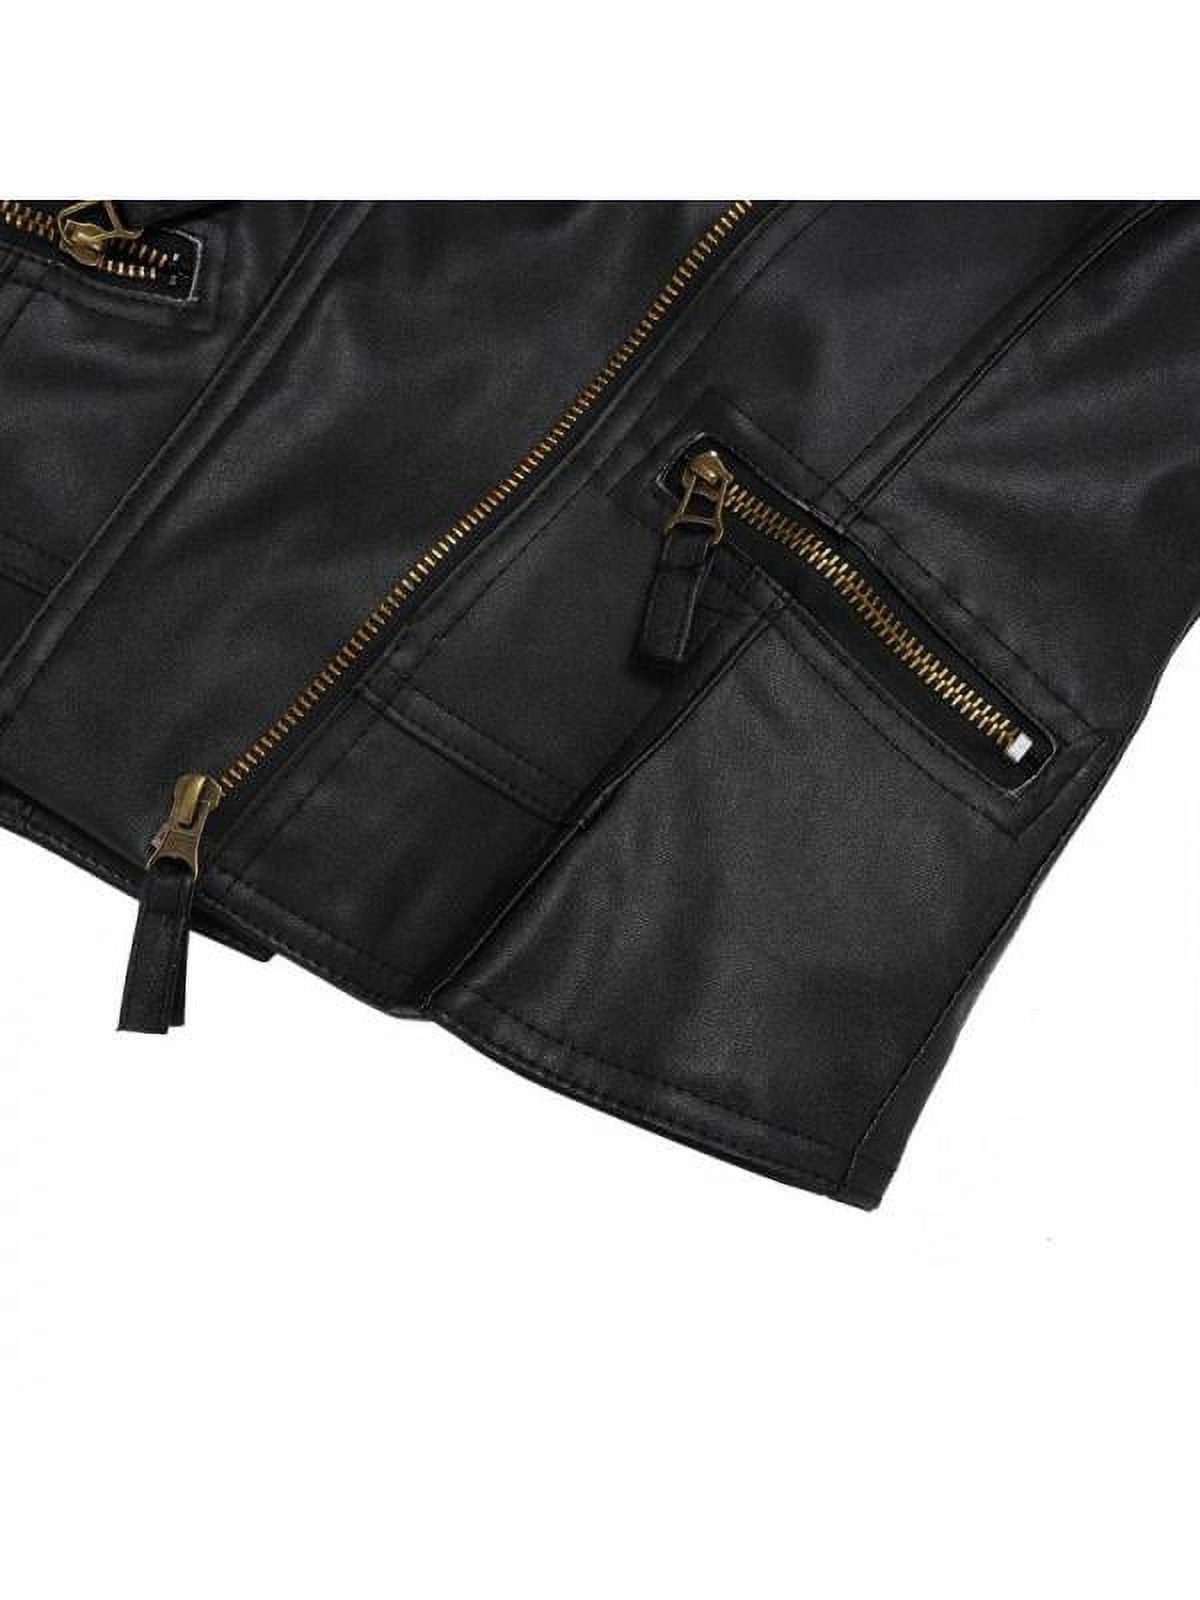 Luxsea Fashion Women Leather Motorcycle Zipper Punk Coat Biker Jacket Lady Autumn Winter Outwear - image 3 of 6